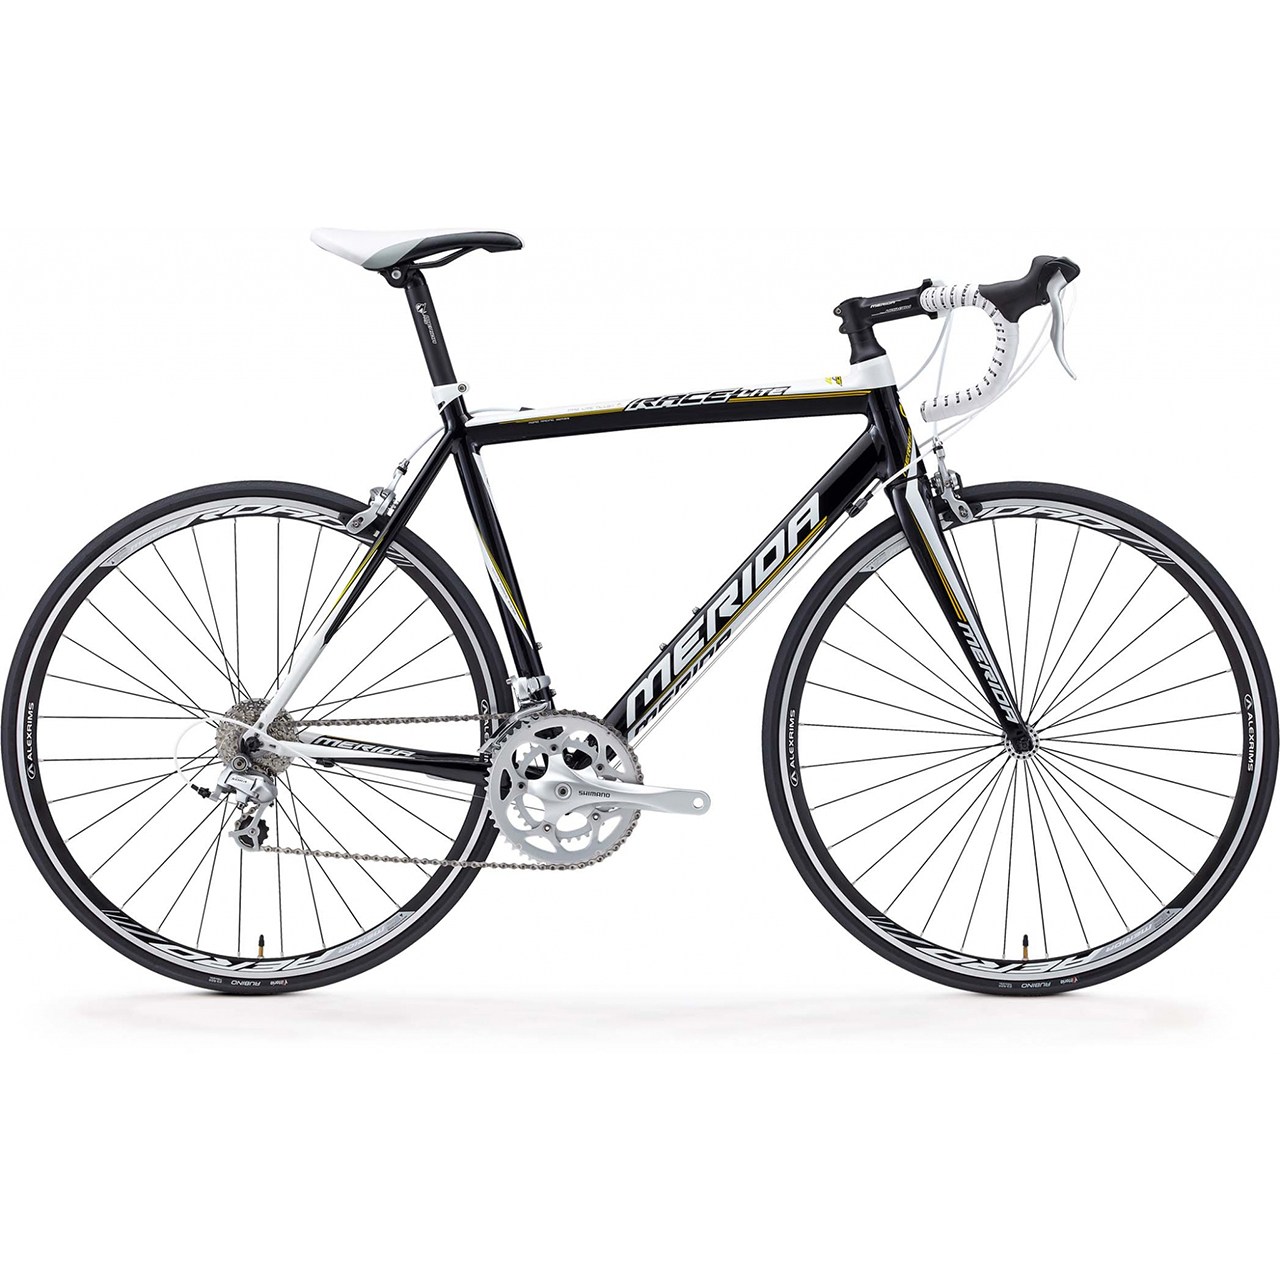 نکته خرید - قیمت روز دوچرخه کورسی مریدا مدل Race Lite 901-Com سایز 27.5 - سایز فریم 20.5 خرید